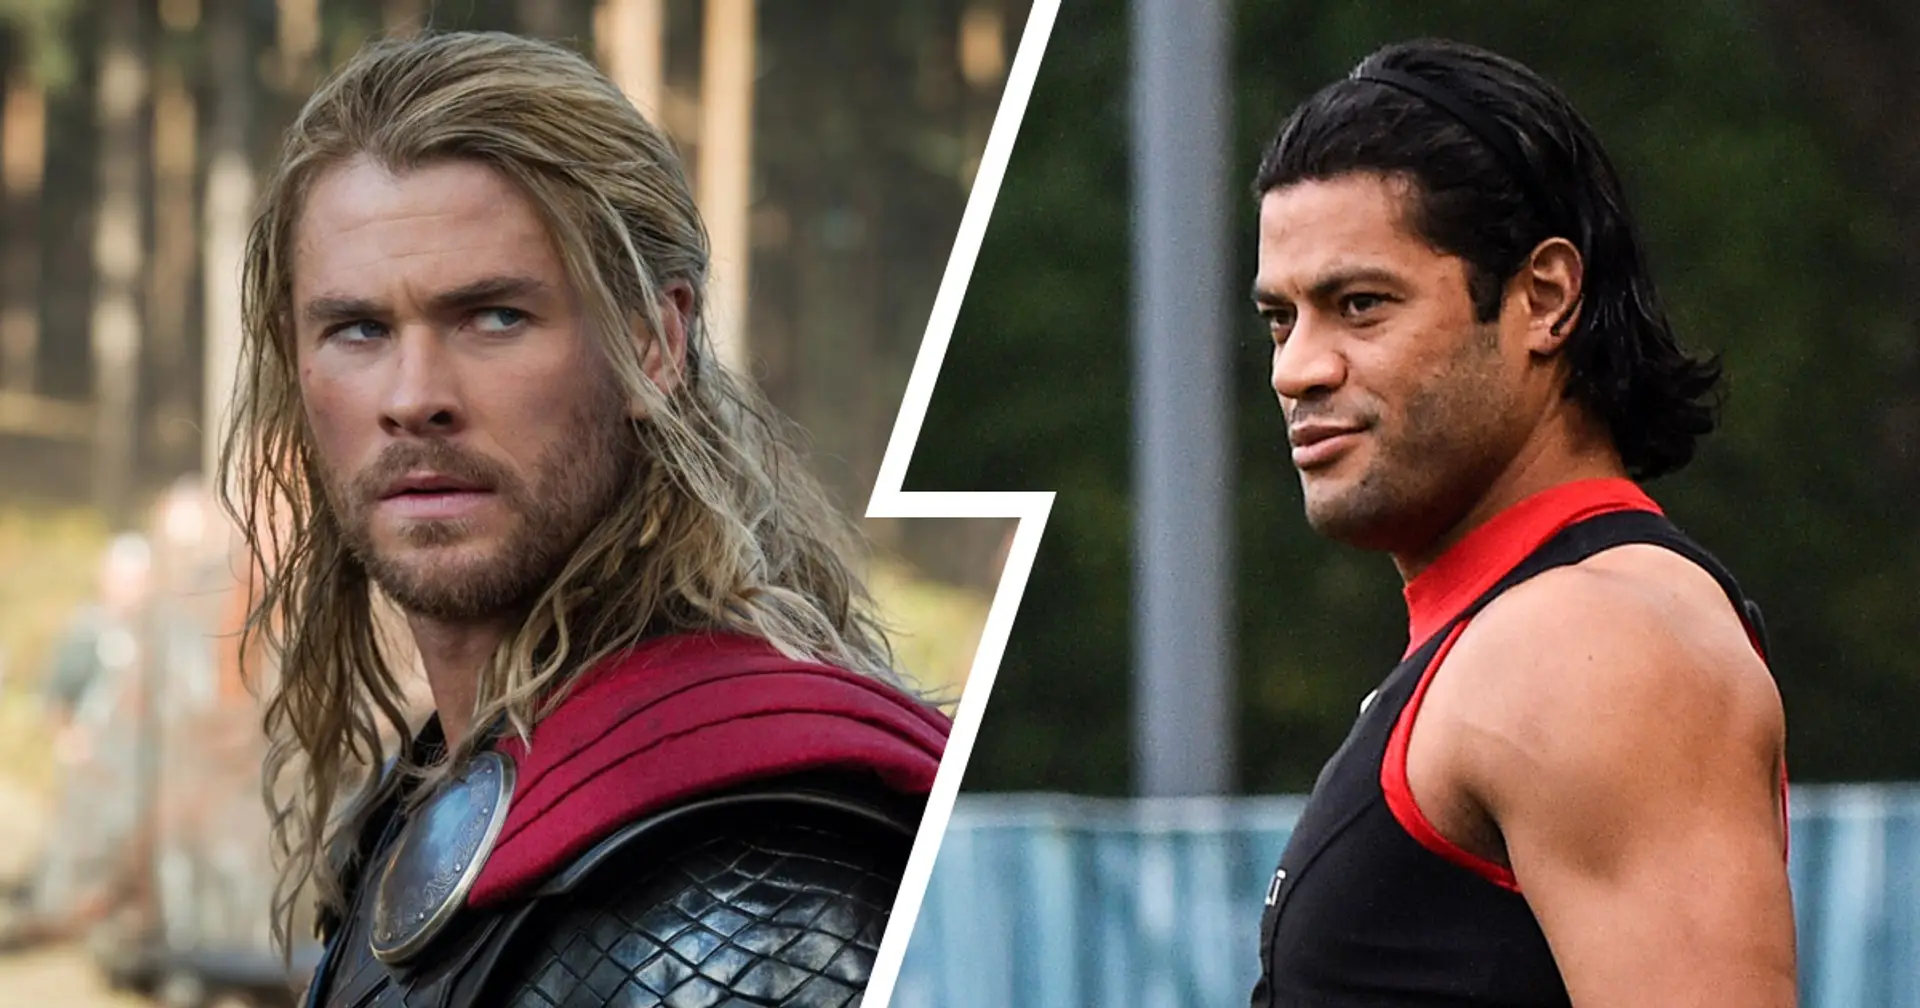 Thor, Robert Trujillo or Falcao? - Hulk! Brazilian returns from COVID-19 break almost unrecognisable